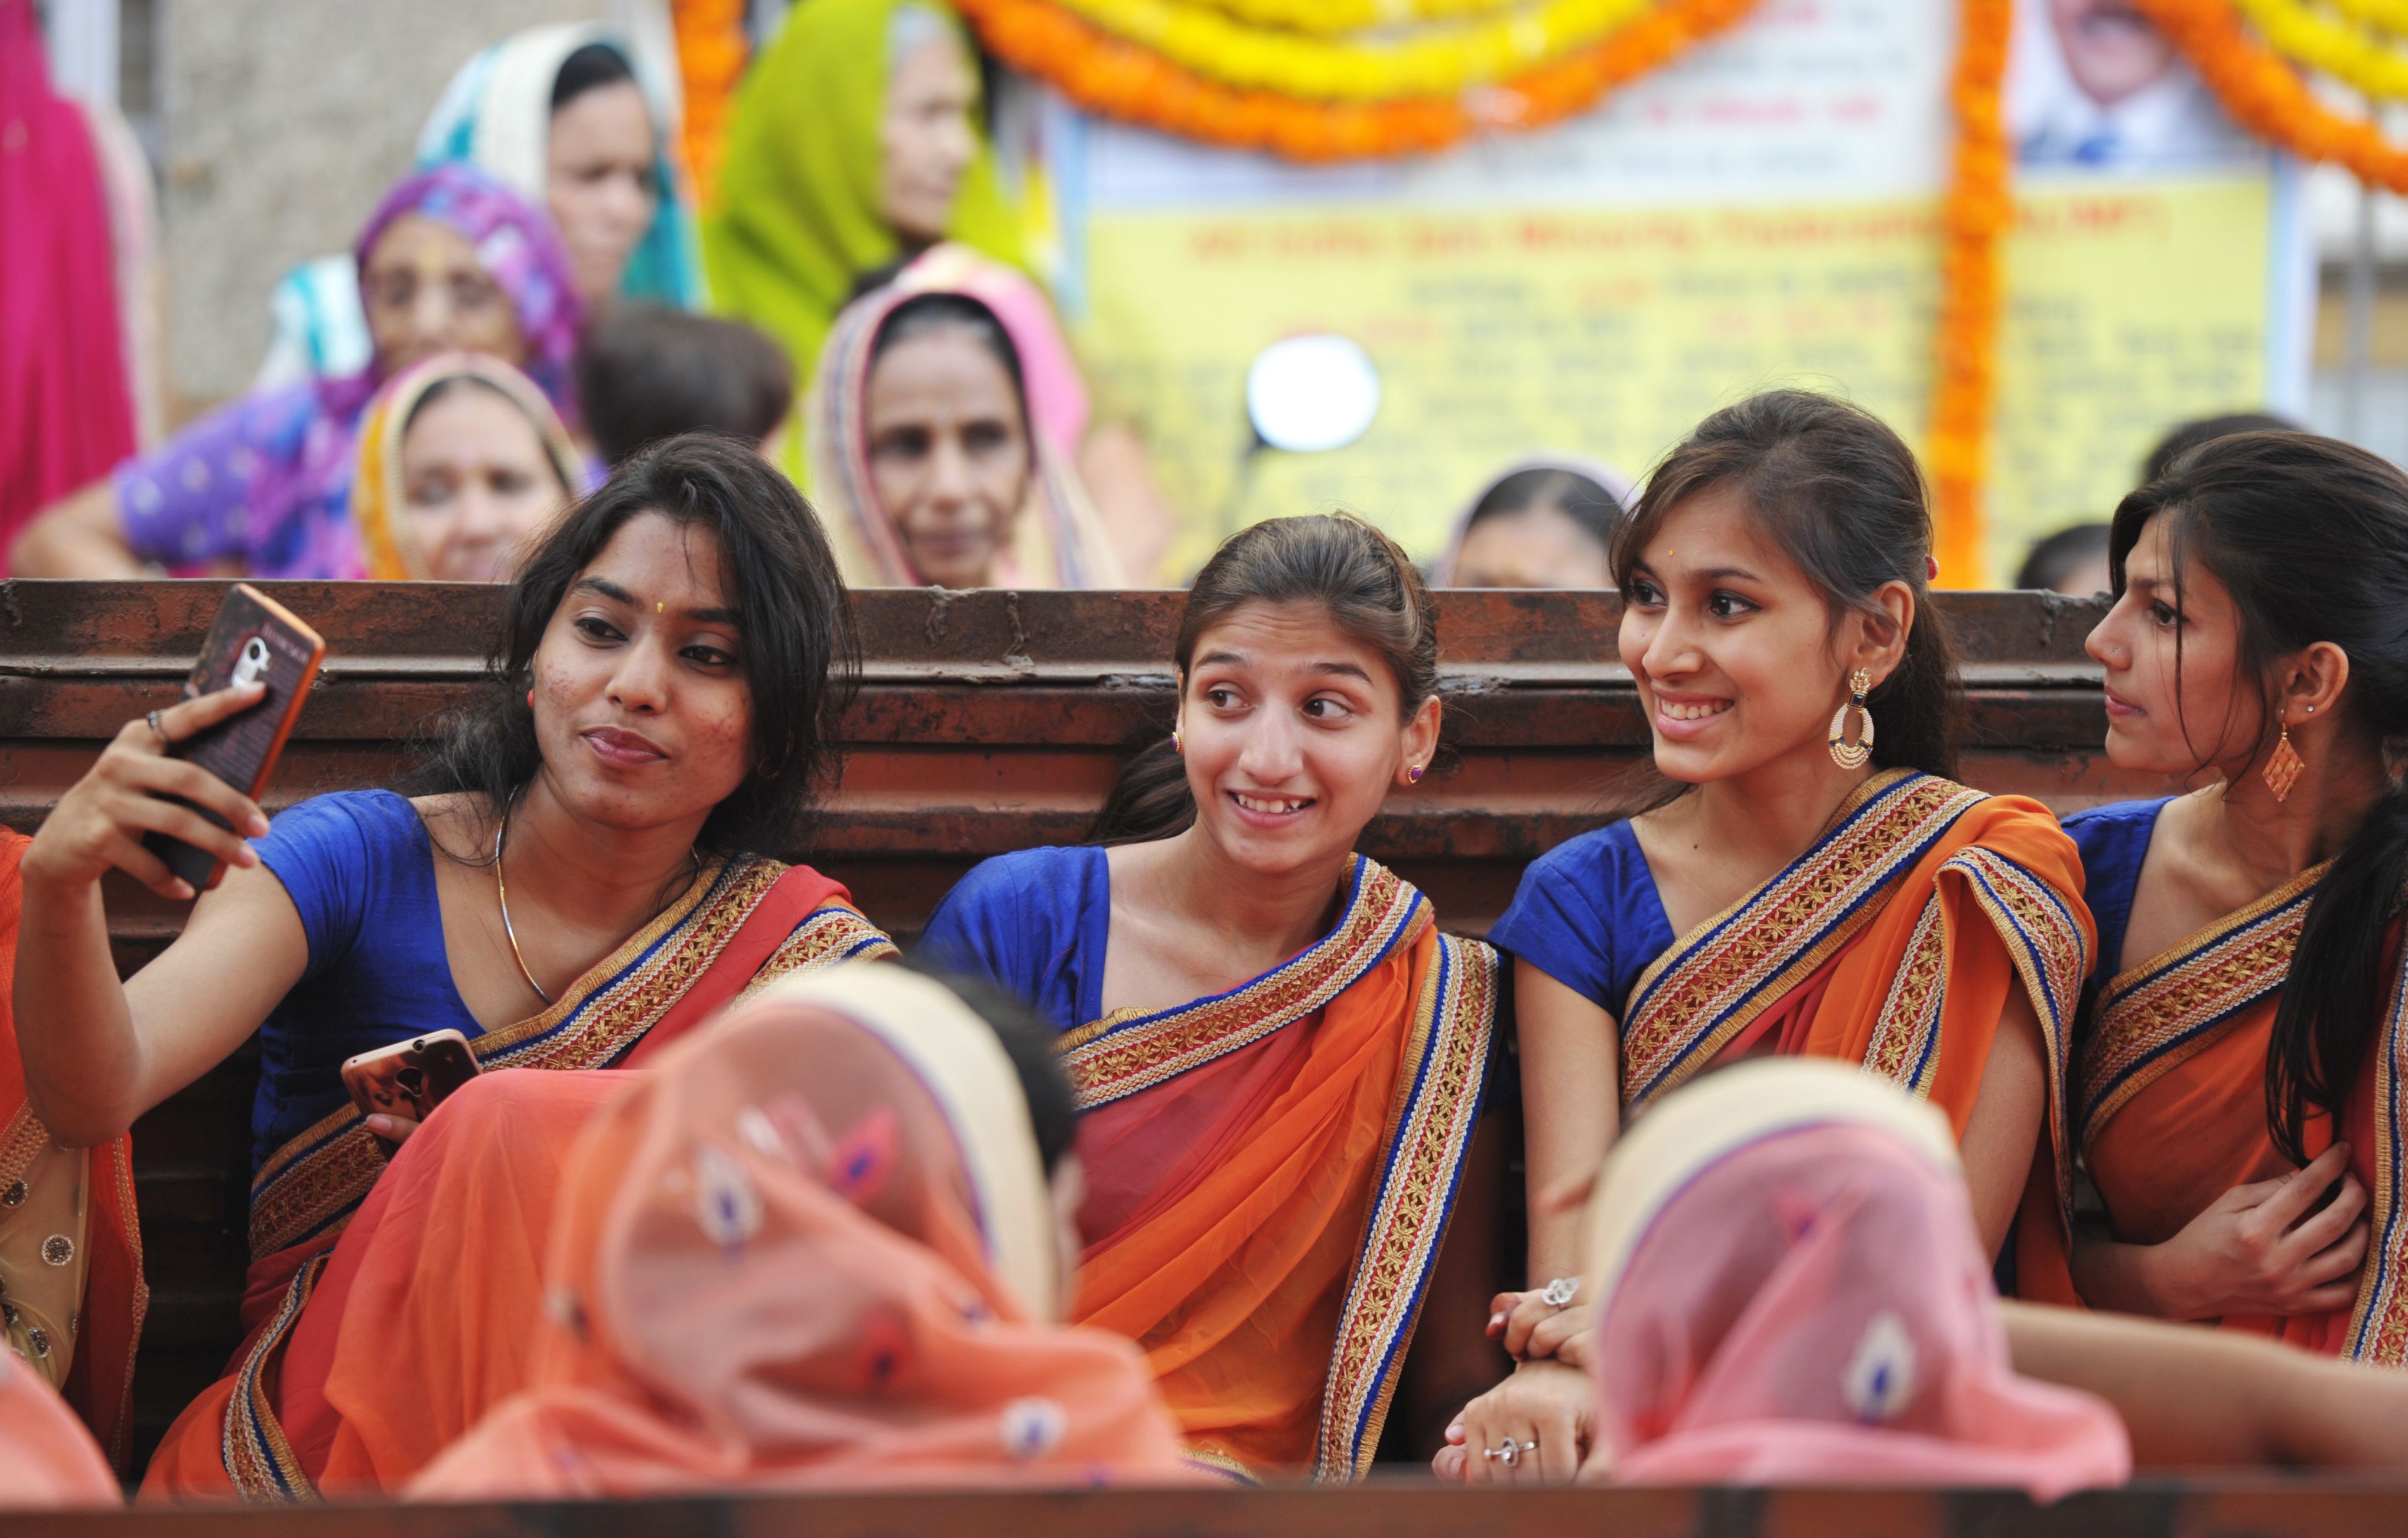 فتيات يلتقطن سيلفى خلال احتفال دينى فى الهند